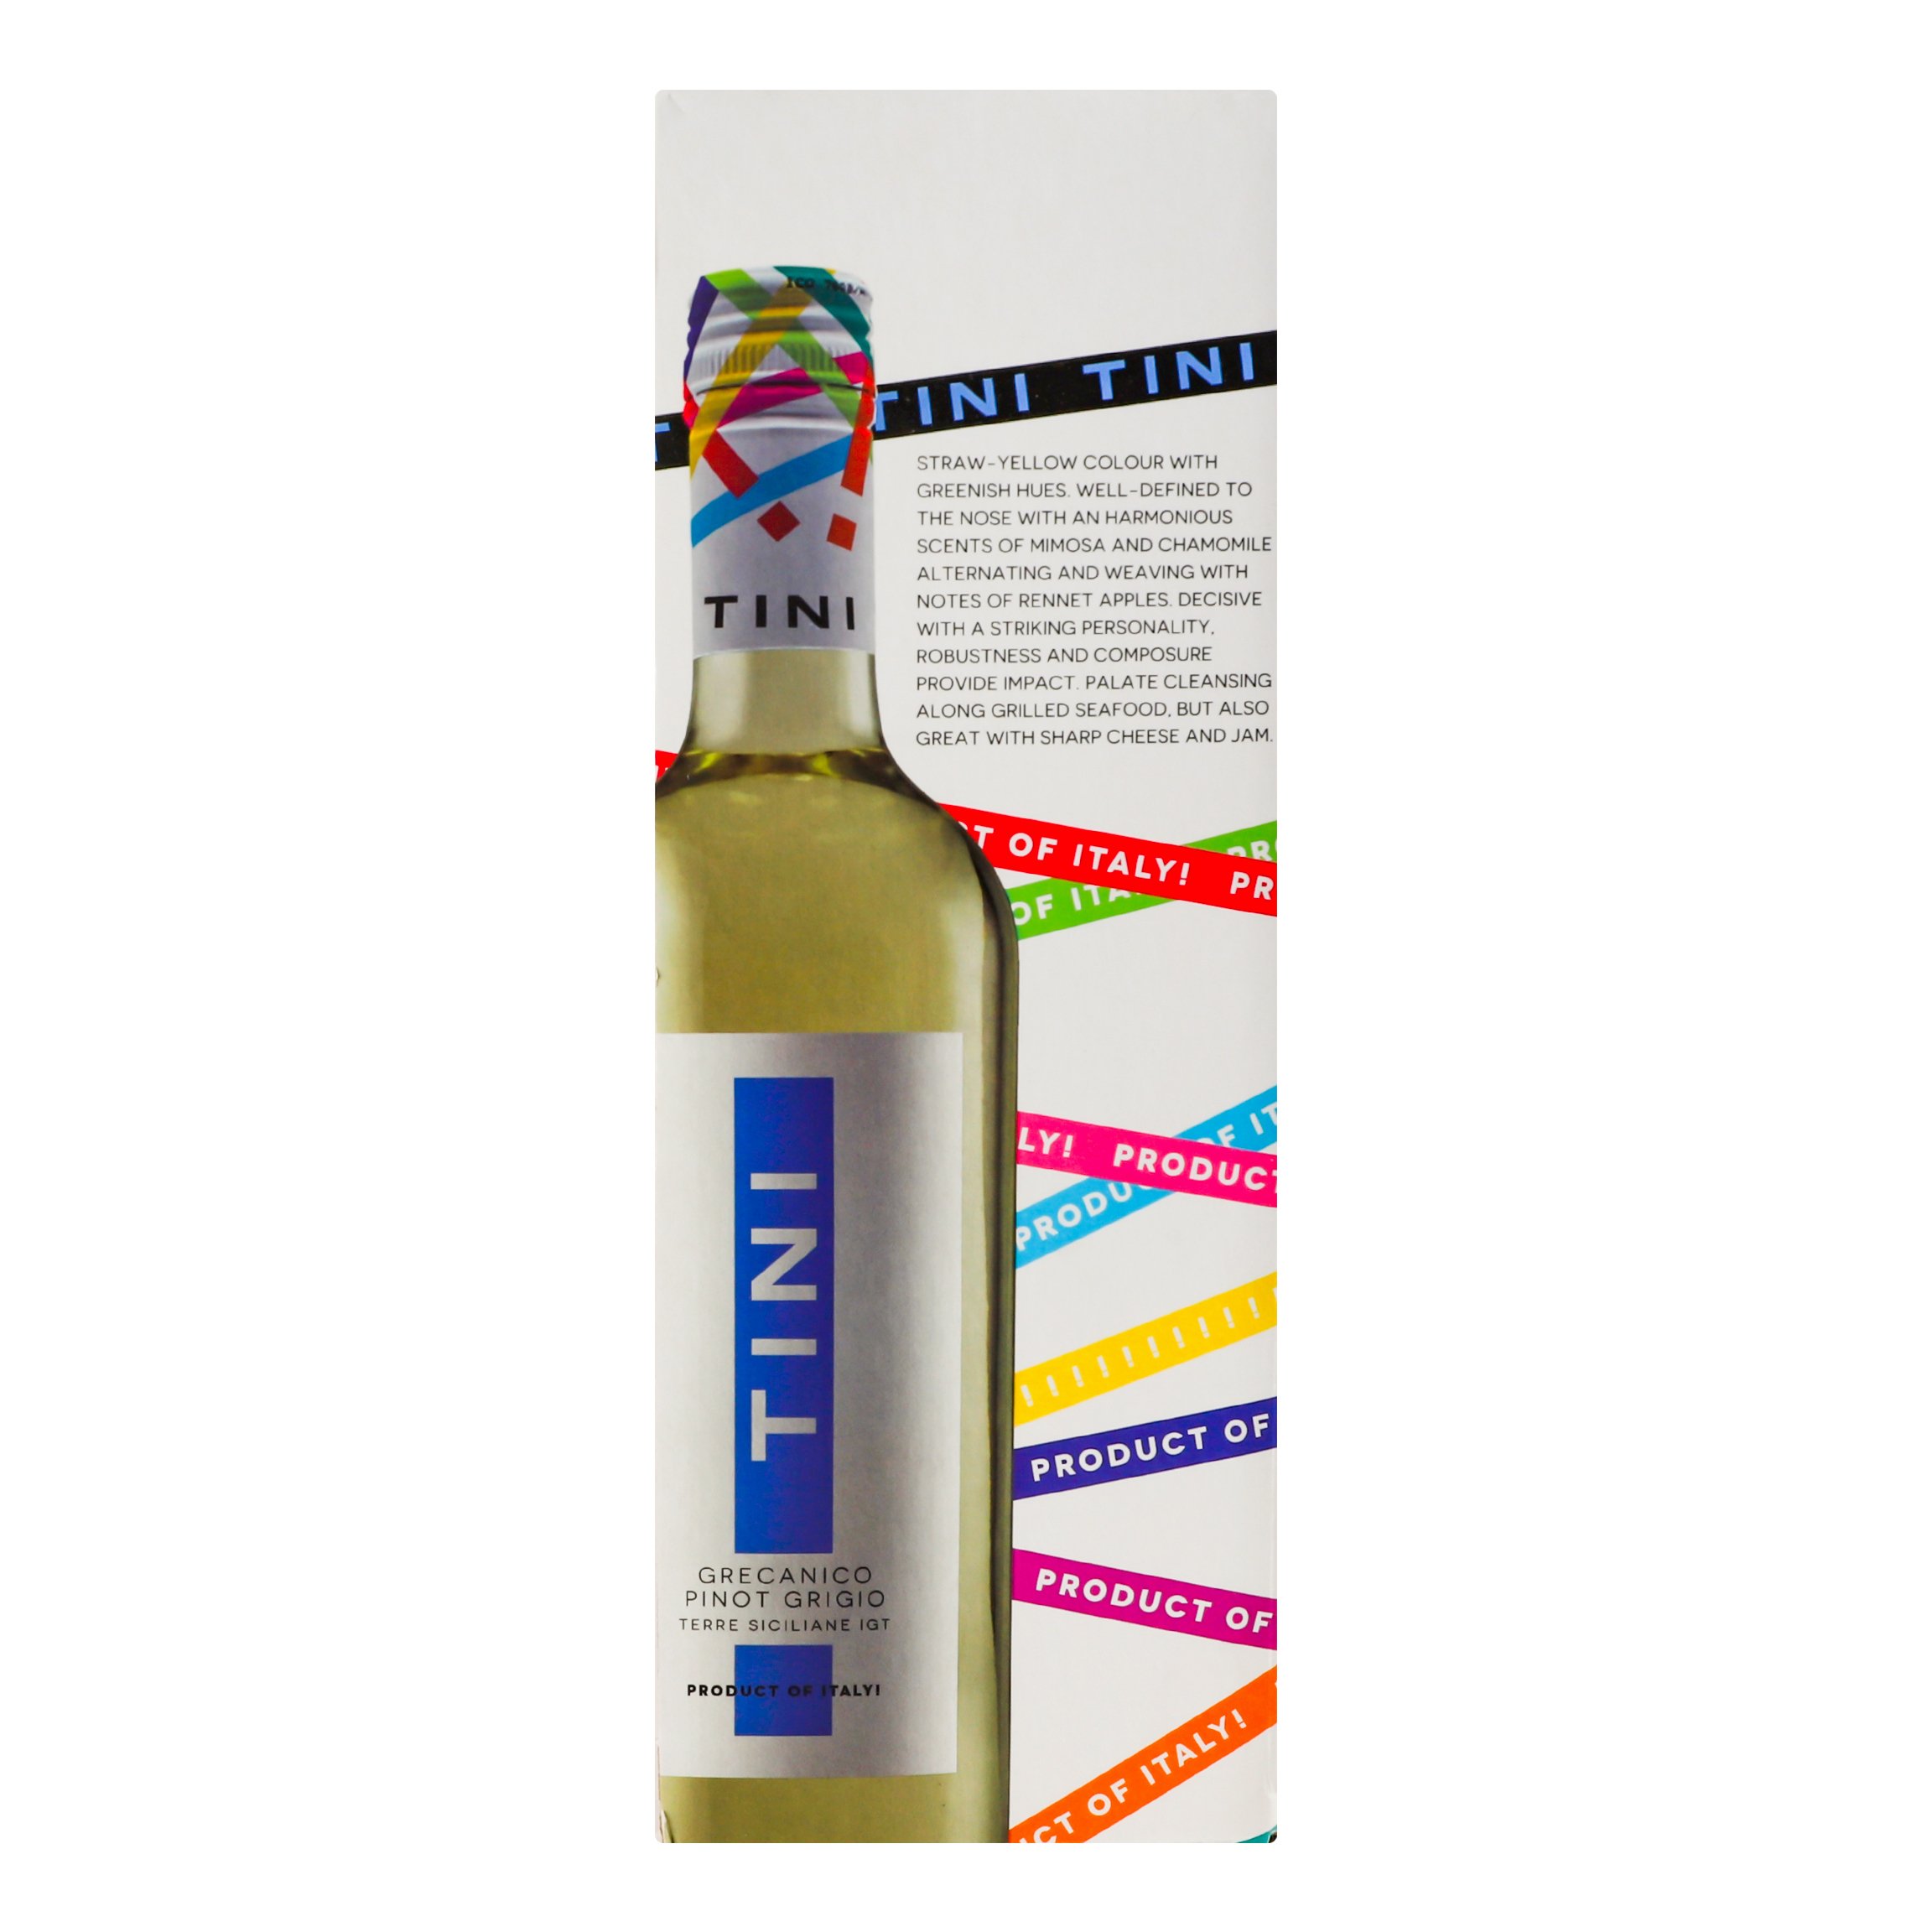 Вино Tini Grecanico Pinot Grigio, біле, сухе, 12%, 3 л (826485) - фото 3